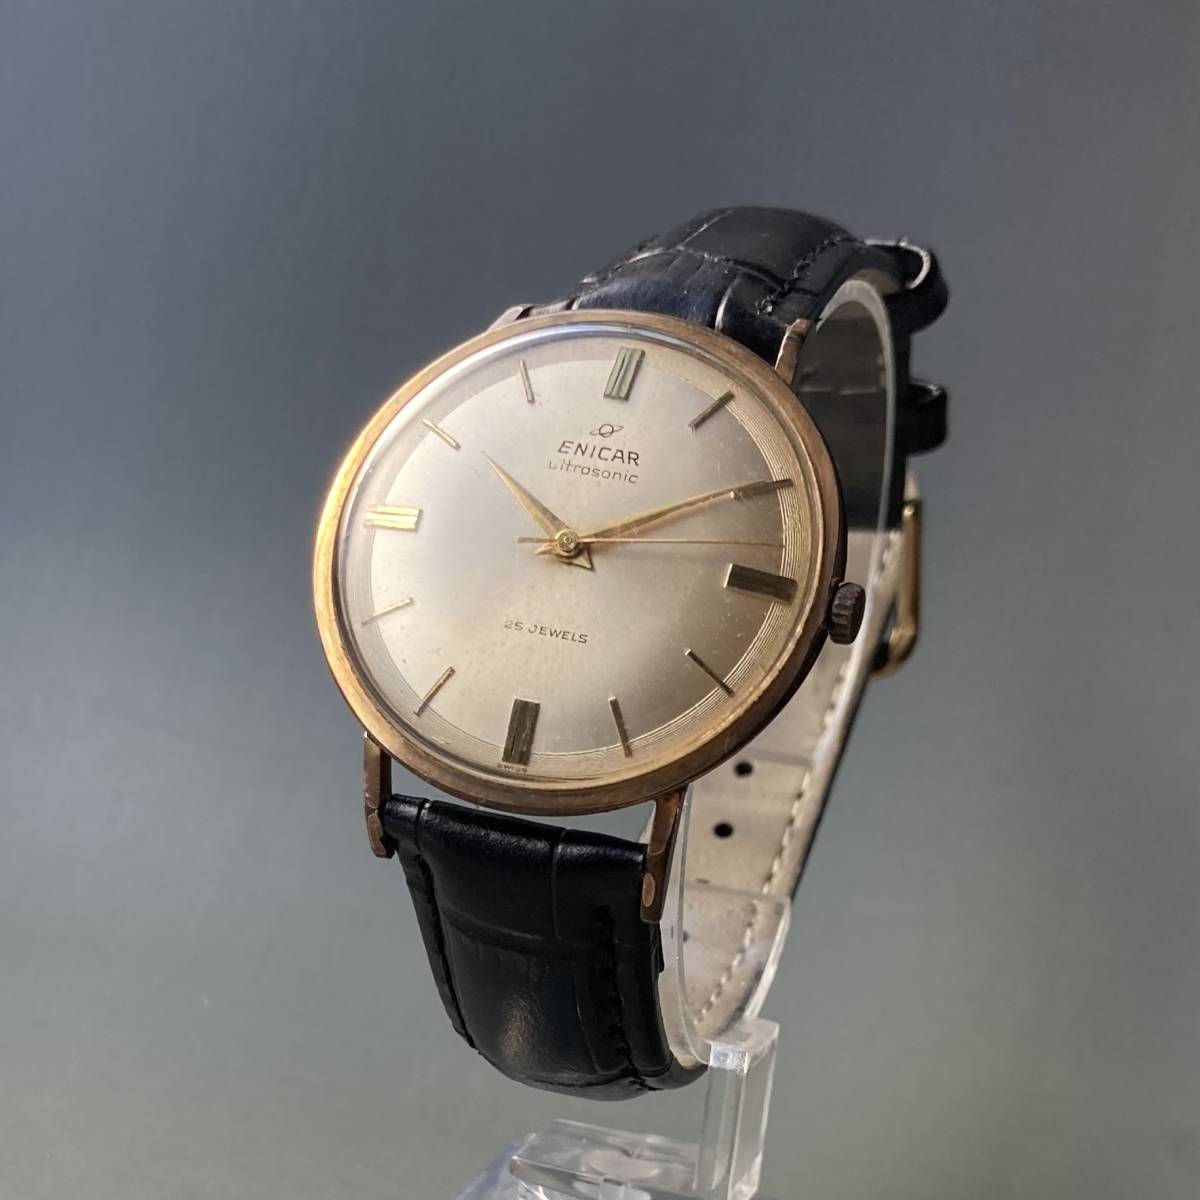 [ рабочий товар ]enikaENICAR античный наручные часы механический завод мужской Швейцария кейс диаметр 35. Vintage часы мужчина 